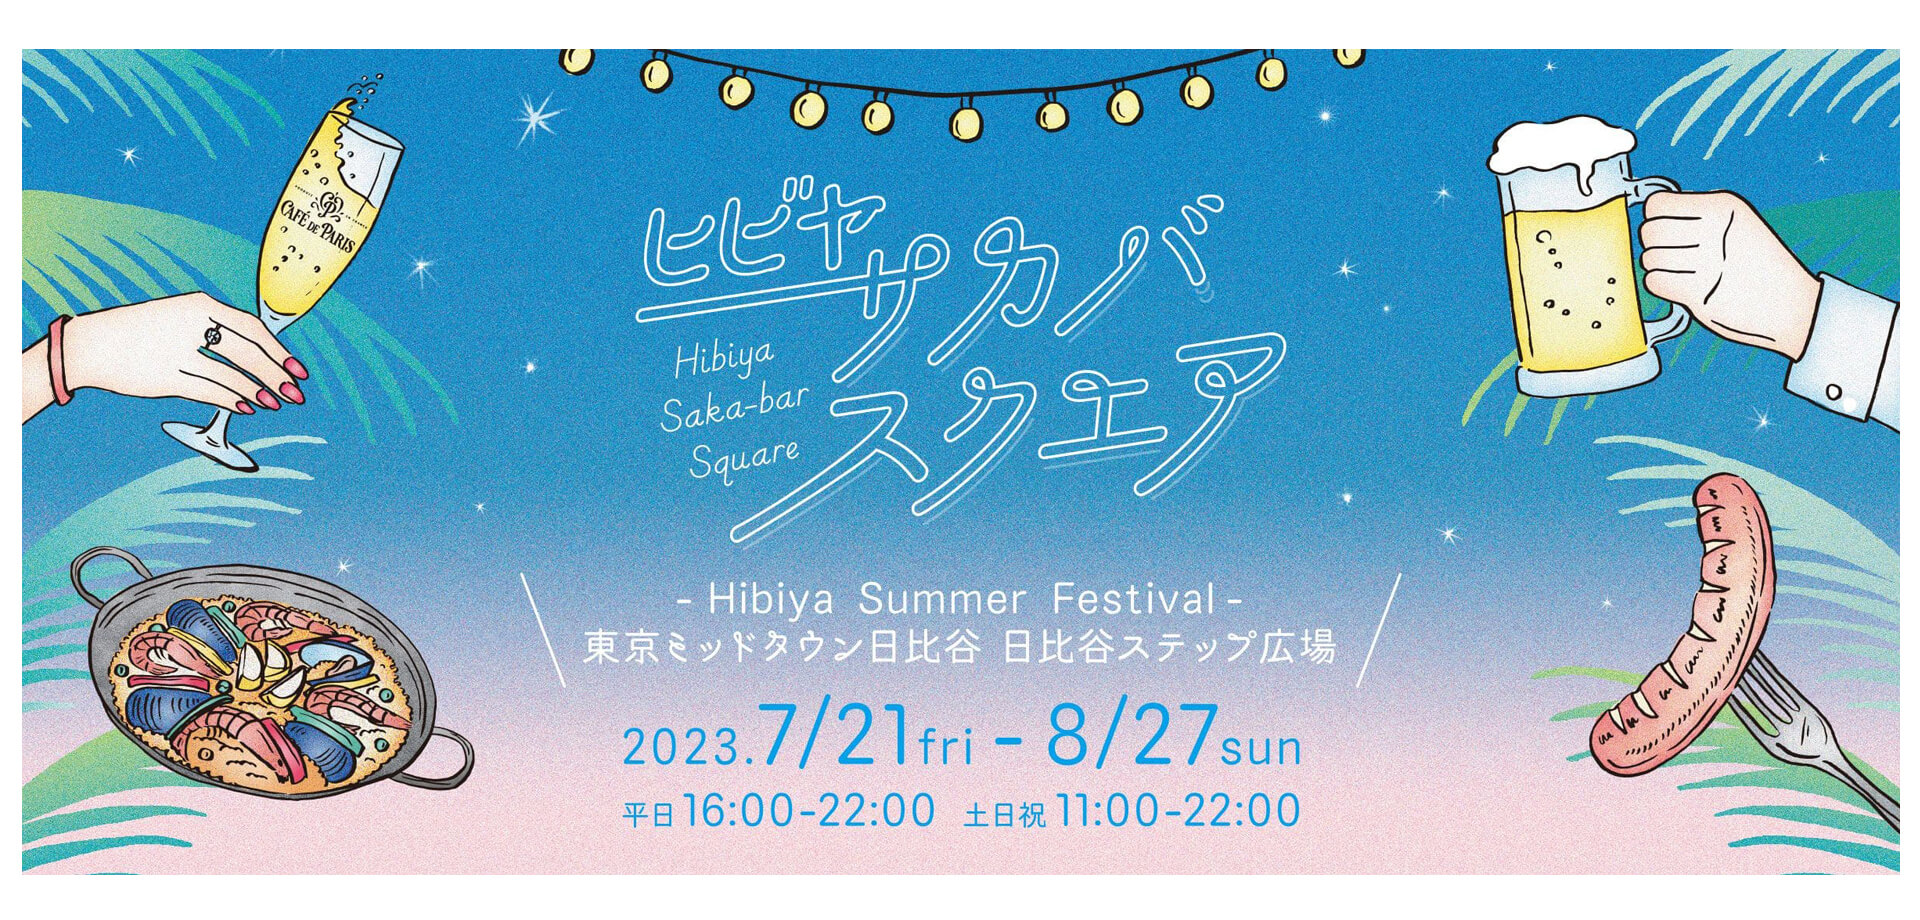 東京ミッドタウン日比谷 HIBIYA SAKA-BAR SQUARE～HIBIYA SUMMER FESTIVAL～